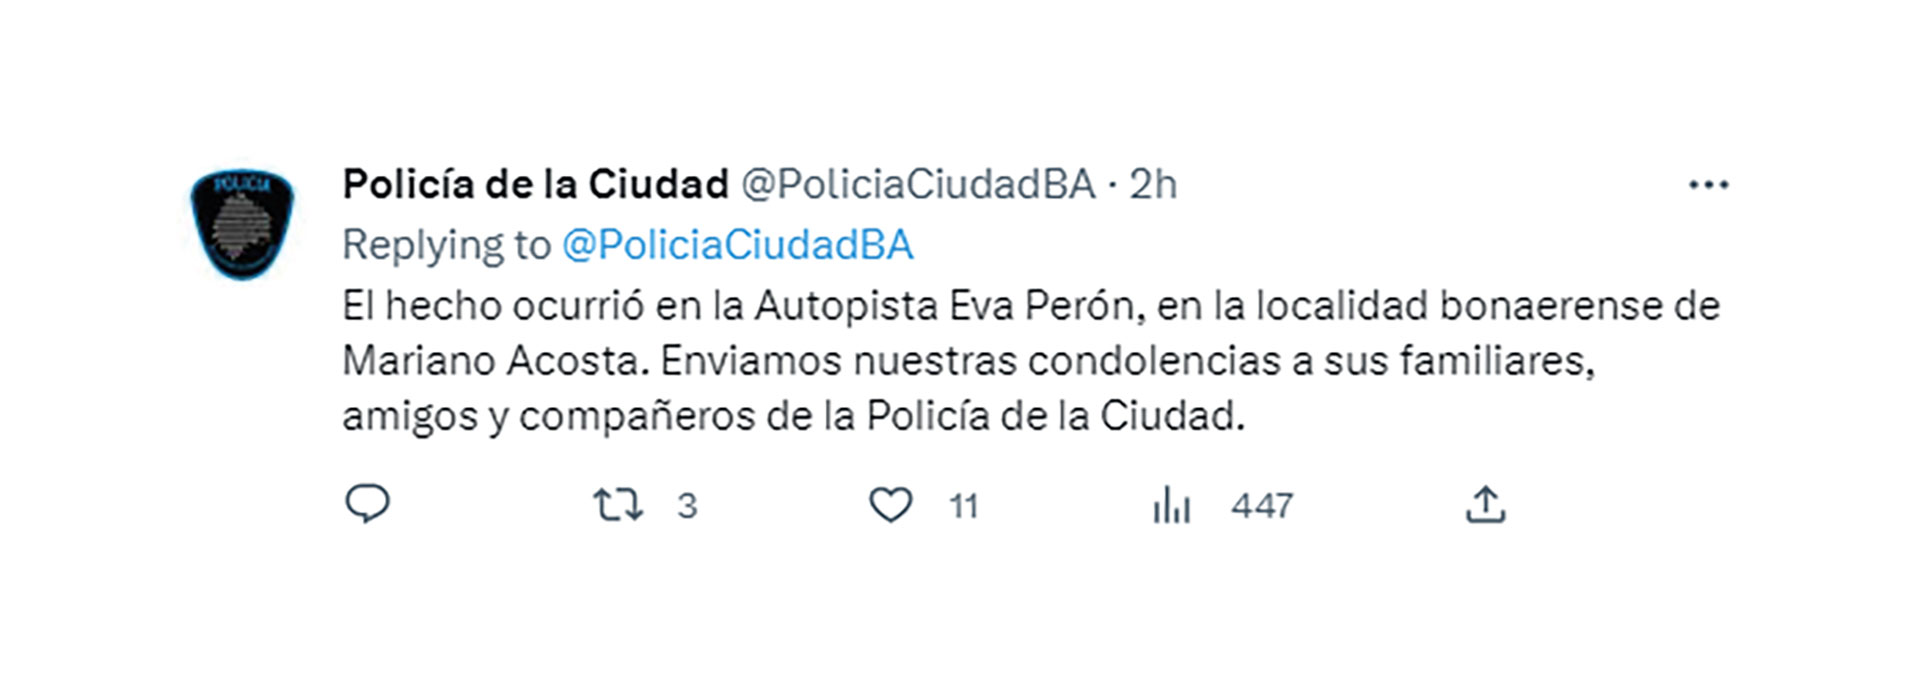 El tuit de la Policía de la Ciudad